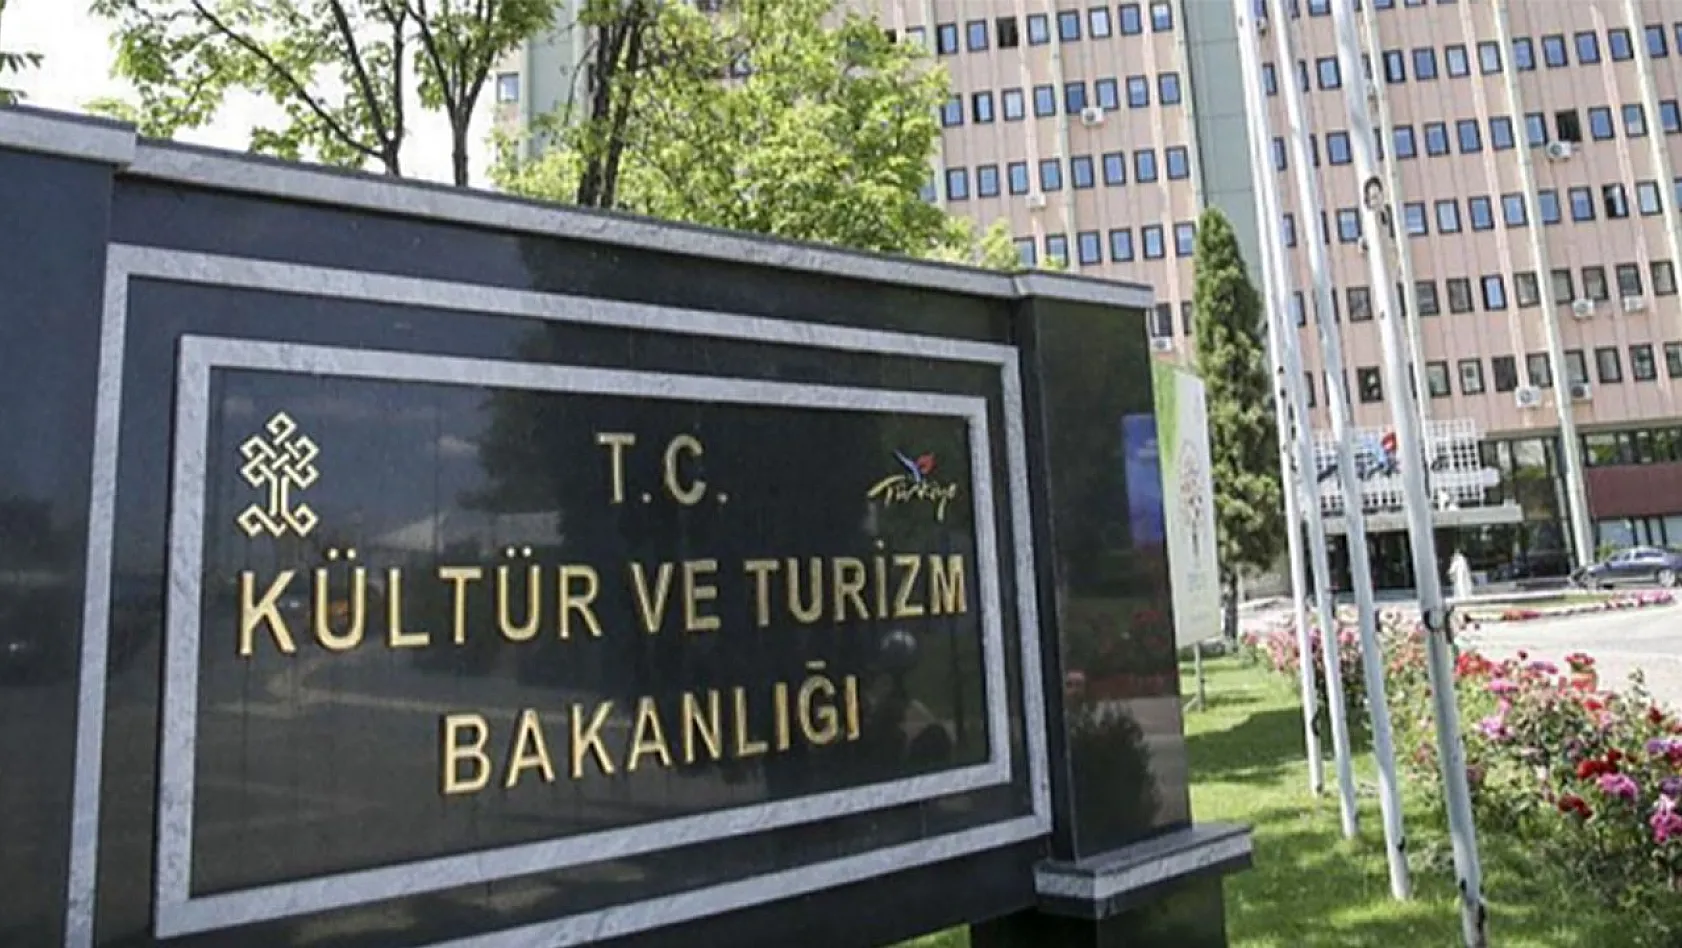 Kültür ve Turizm Bakanlığı Elazığ'da Sözleşmeli Personel Alacak